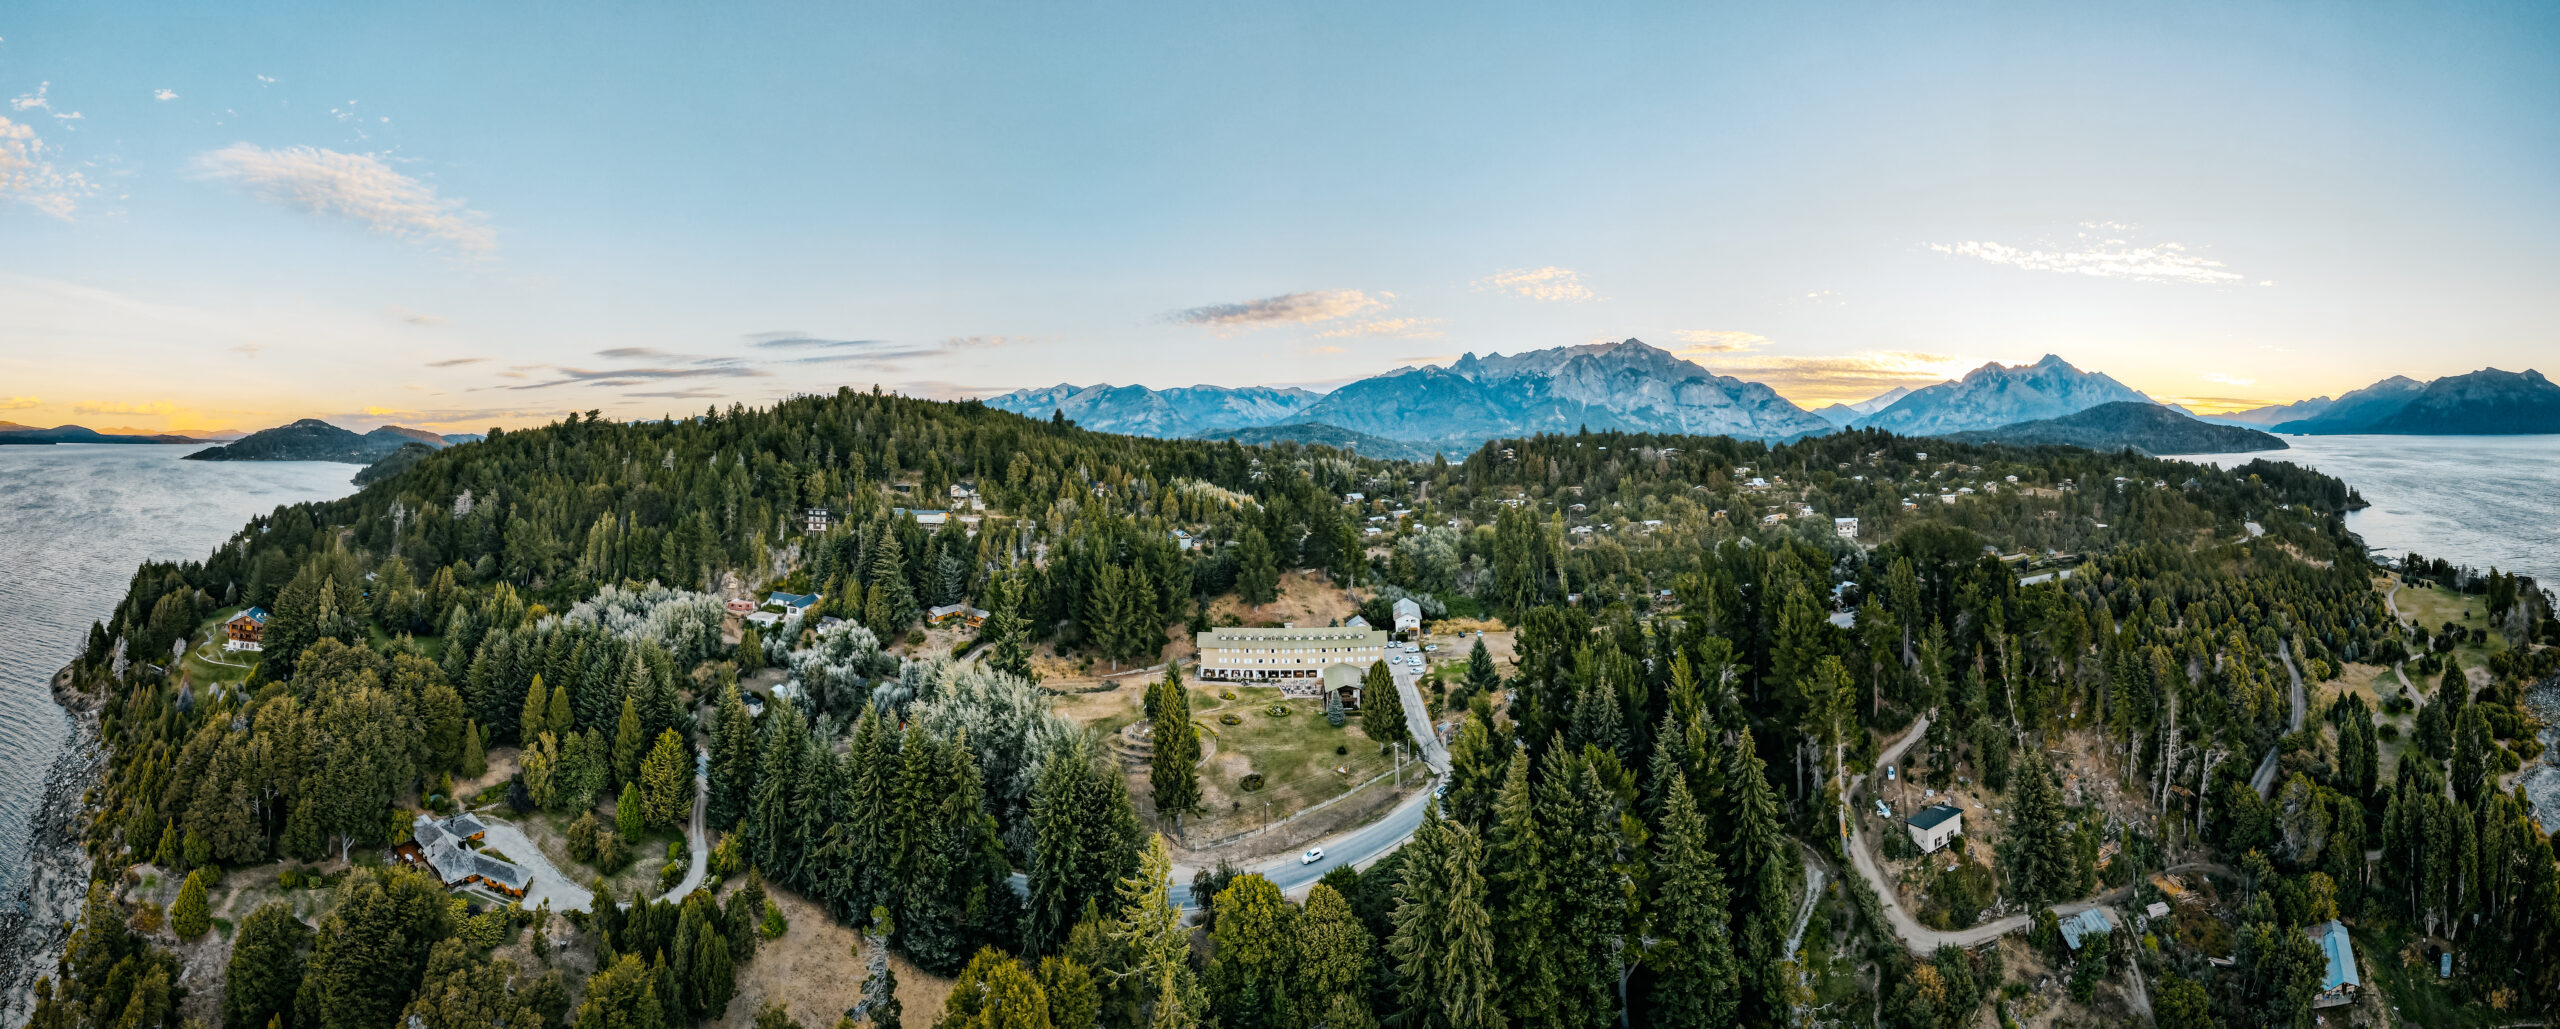 Gran Hotel Panamericano, entorno natural para disfrutar el verano en Bariloche